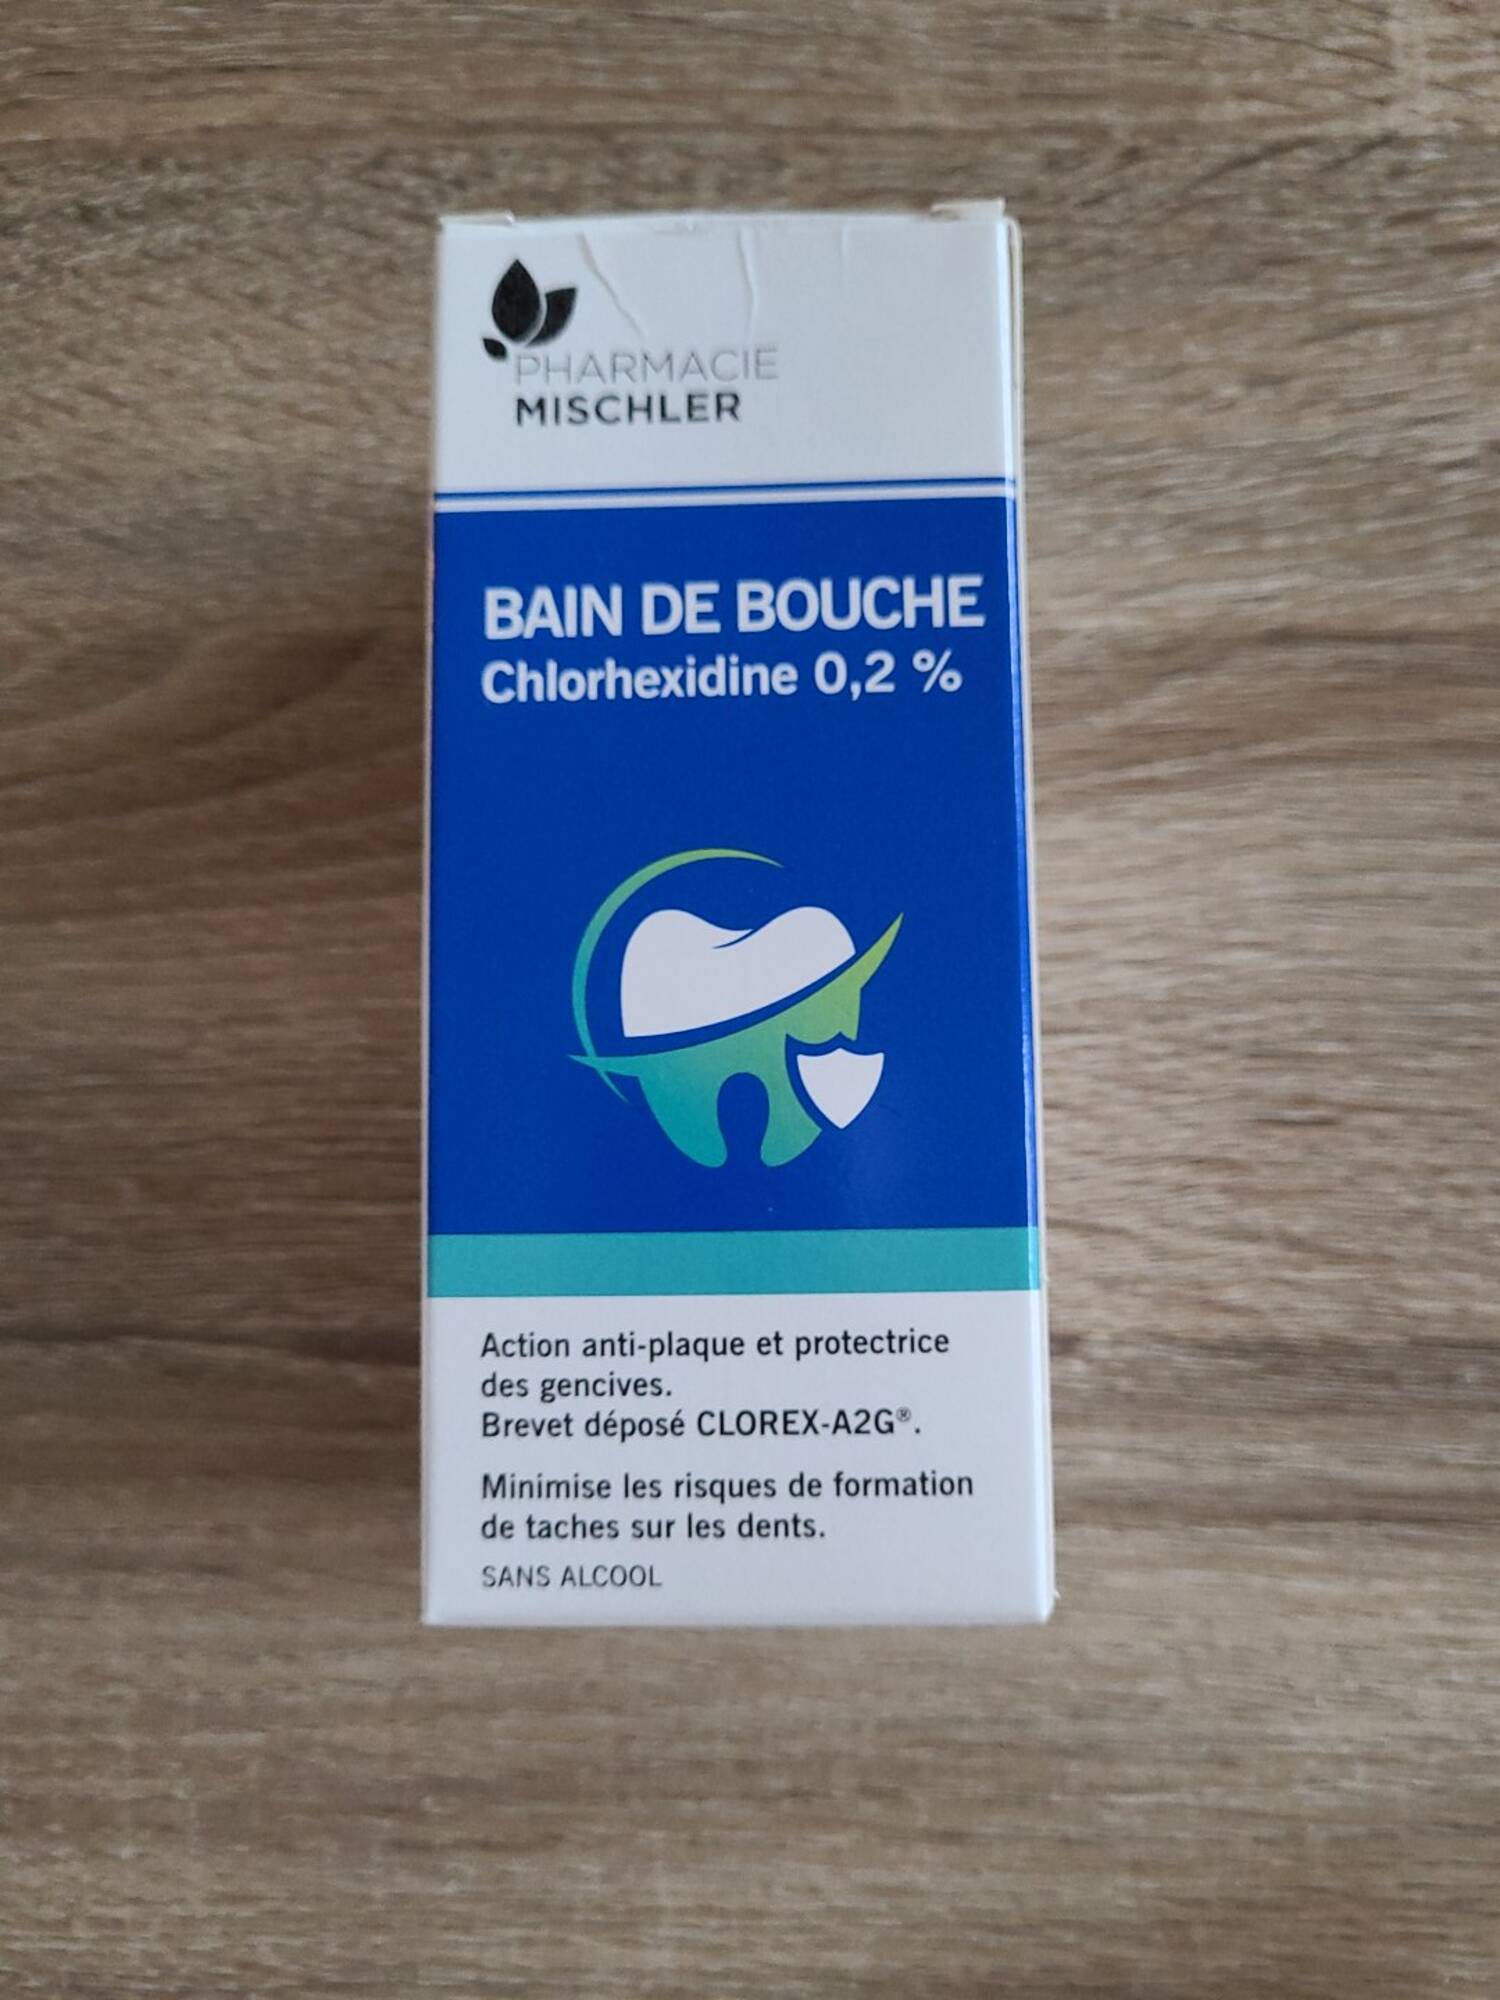 PHARMACIE MISCHLER - Bain de bouche chlorhexidine 0.2%